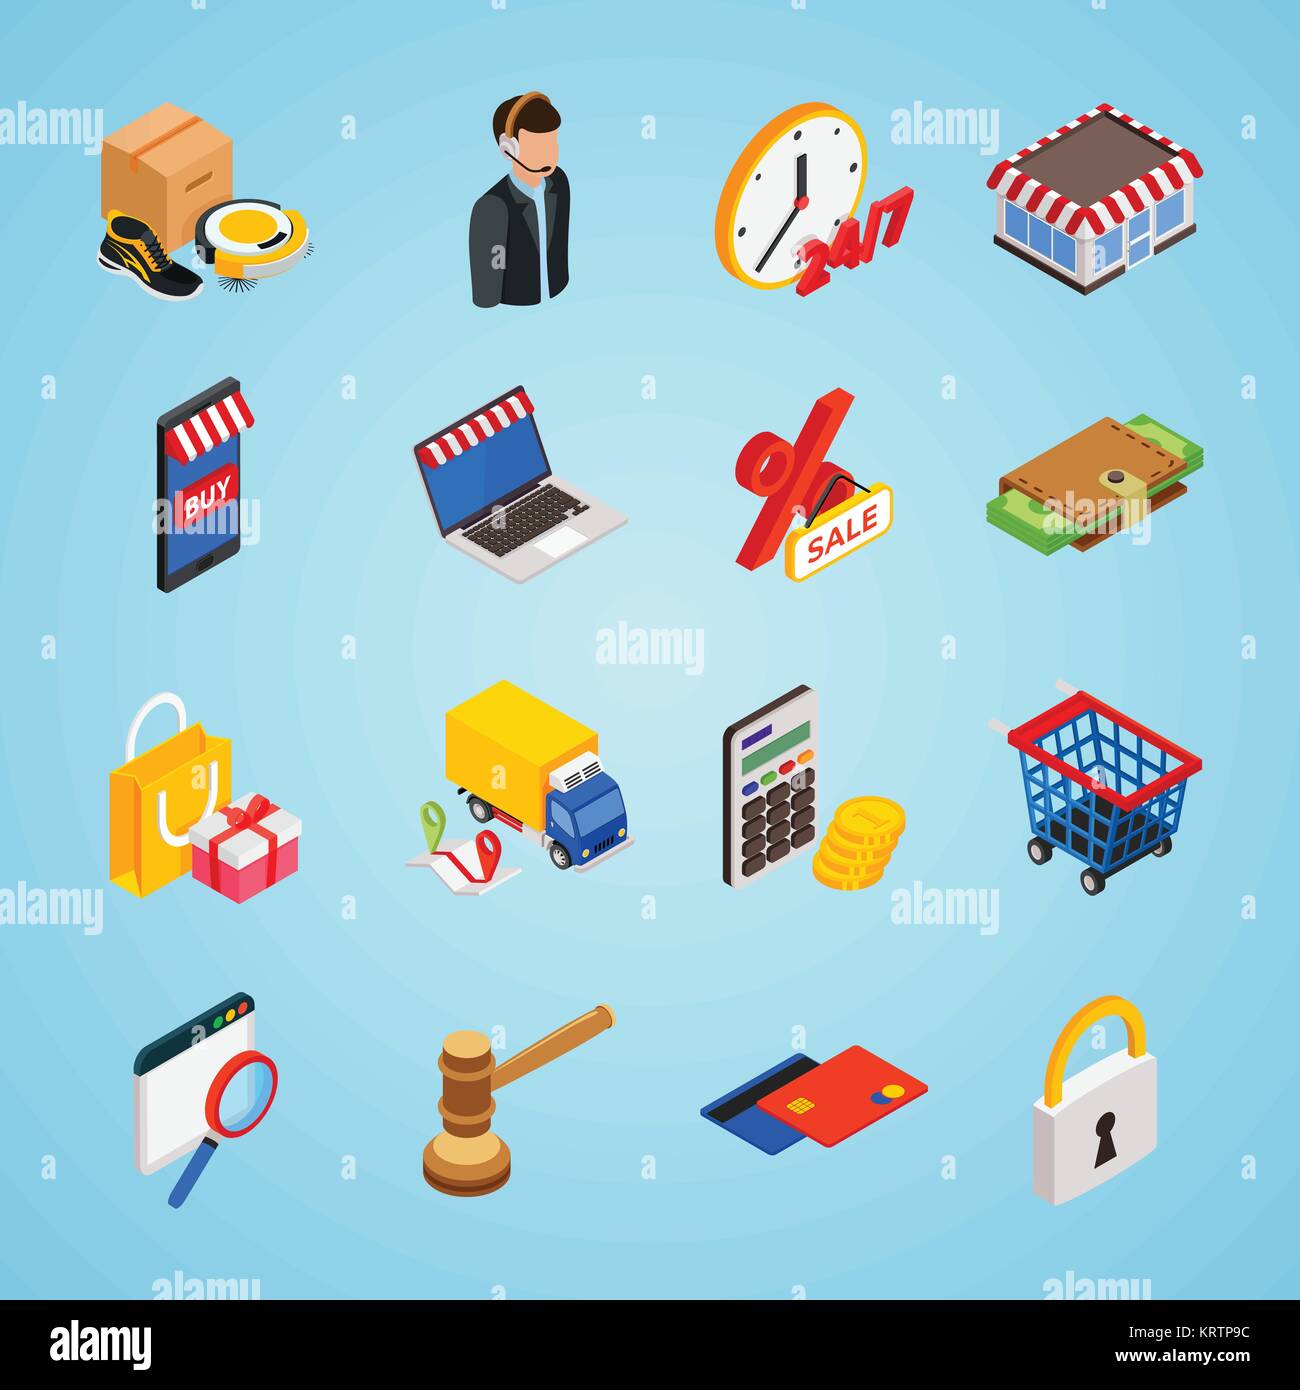 Comercio electrónico isométrica conjunto de iconos con gadgets para comprar en internet y símbolos de compras Ilustración del Vector